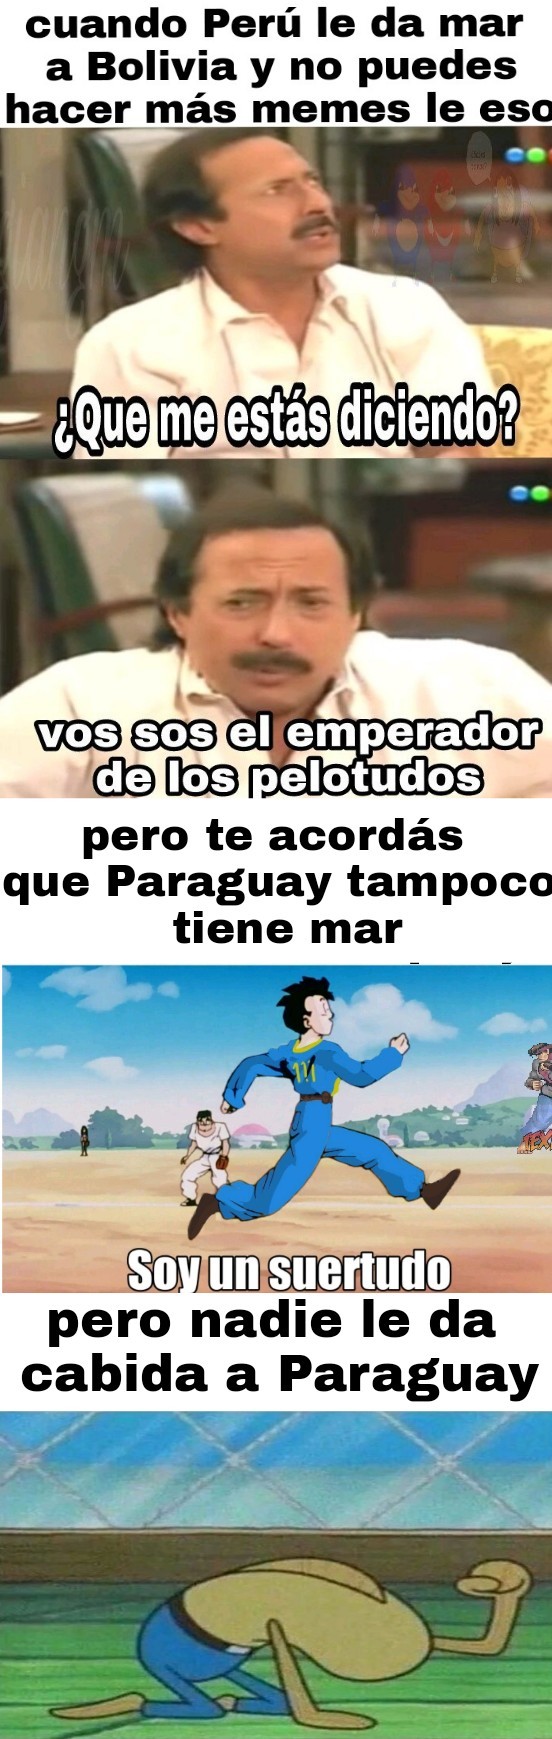 Bolivianosa - meme